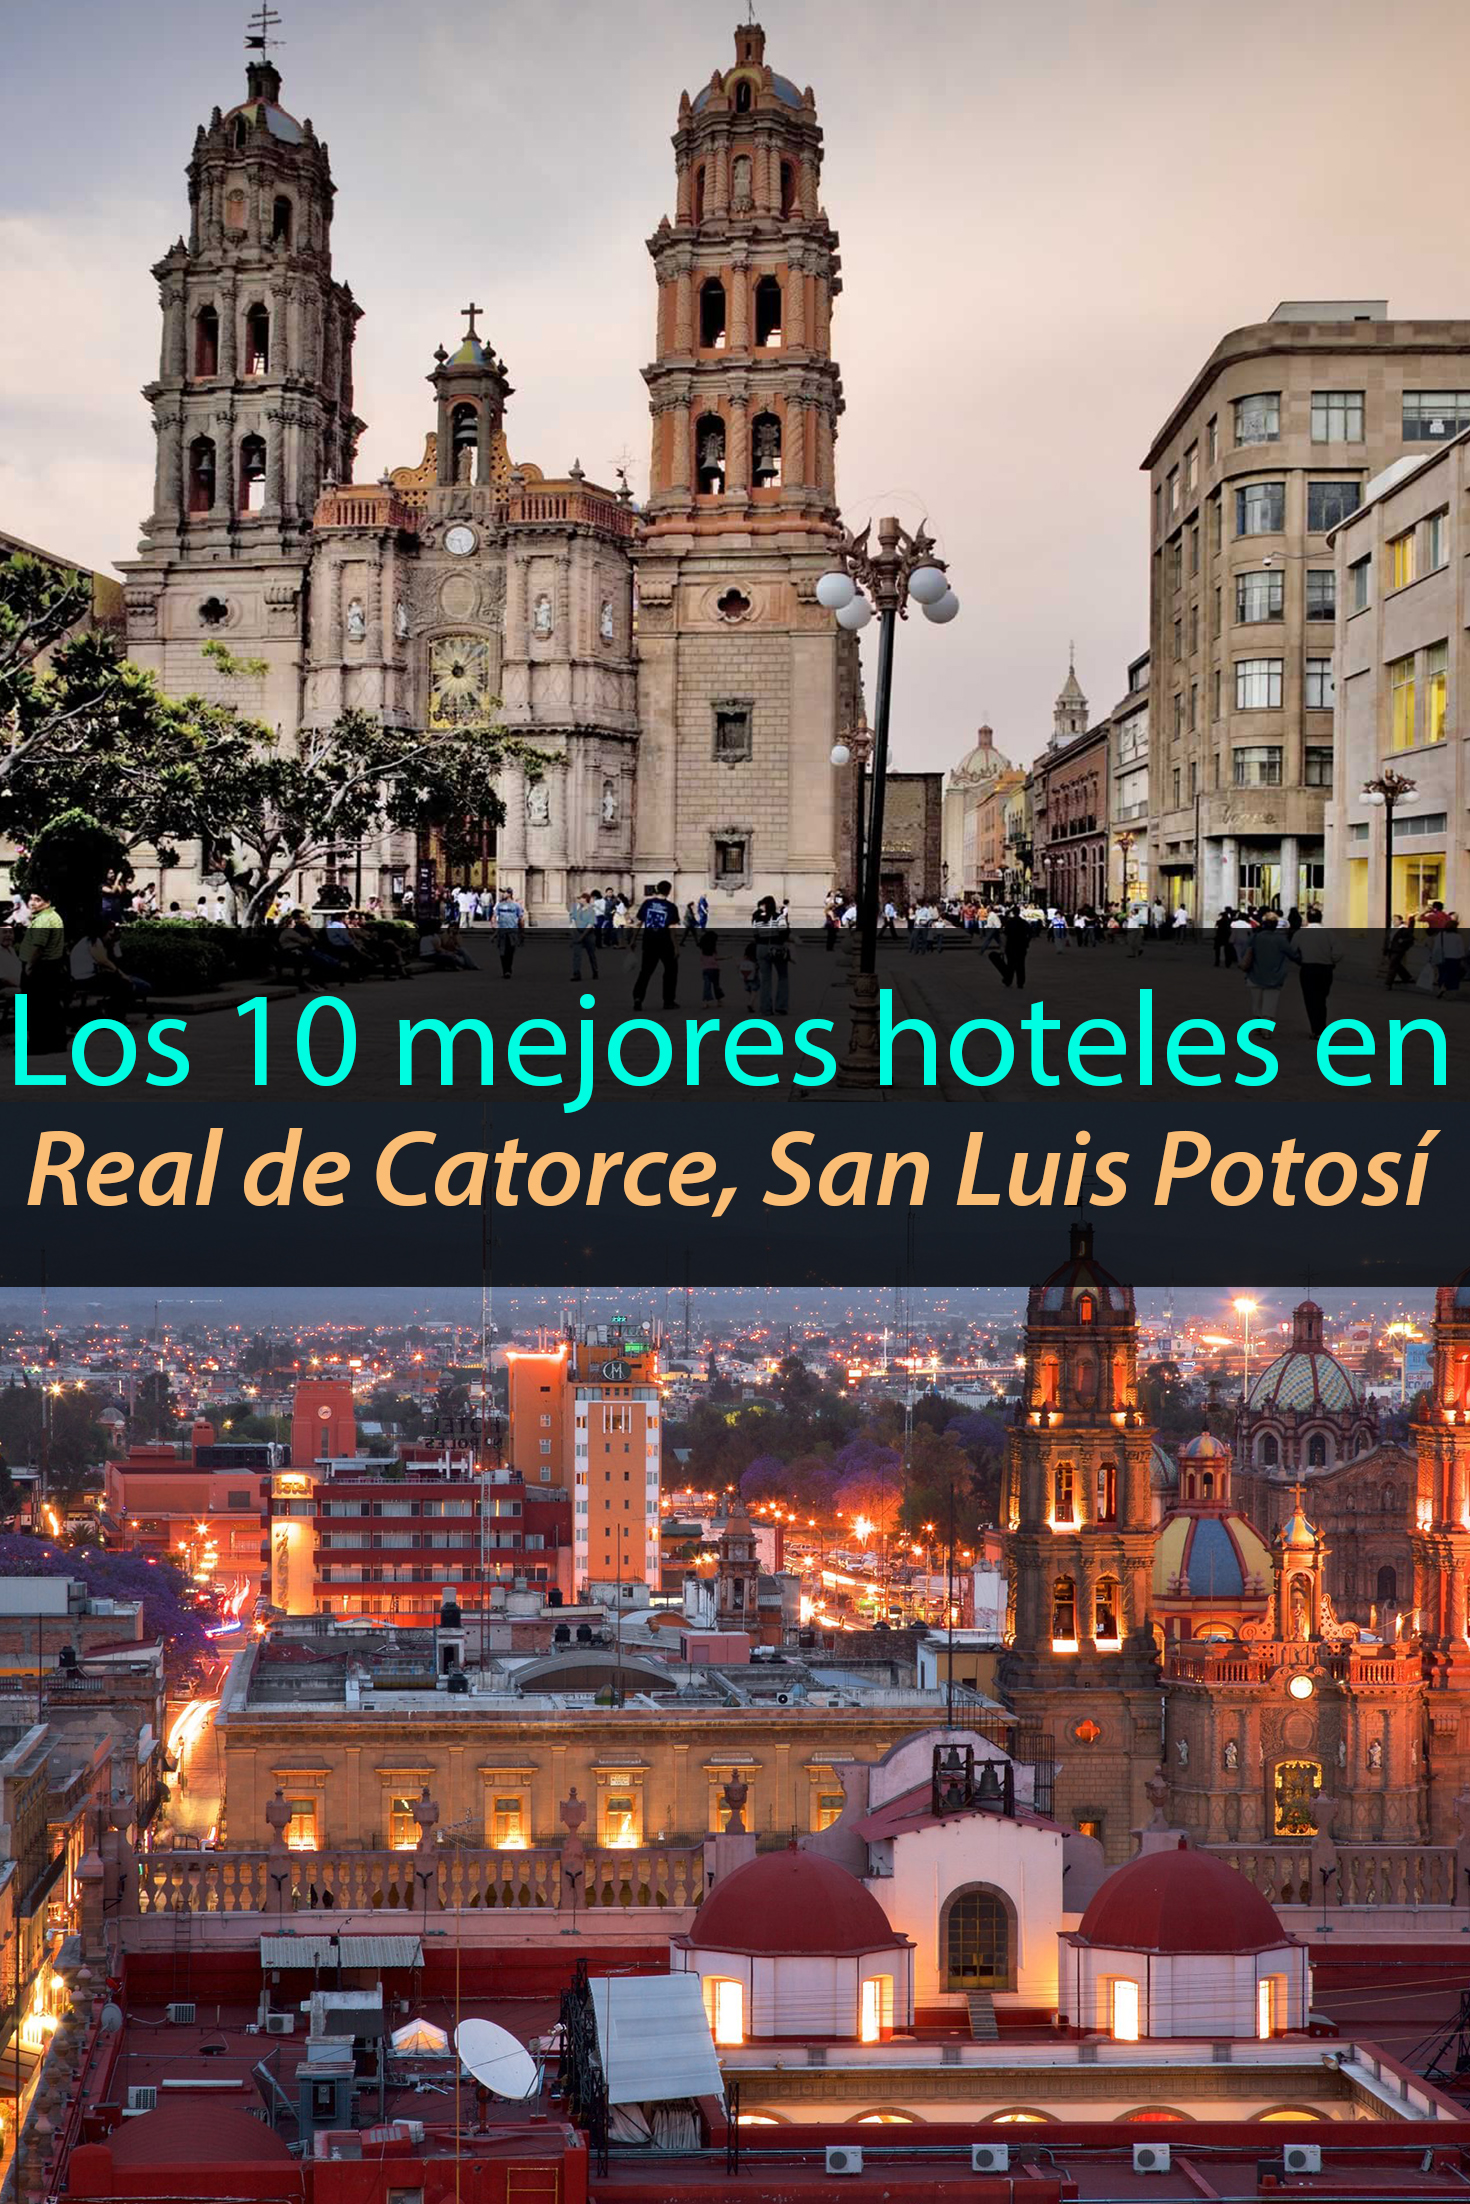 Los 10 mejores hoteles en Real de Catorce, San Luis Potosí